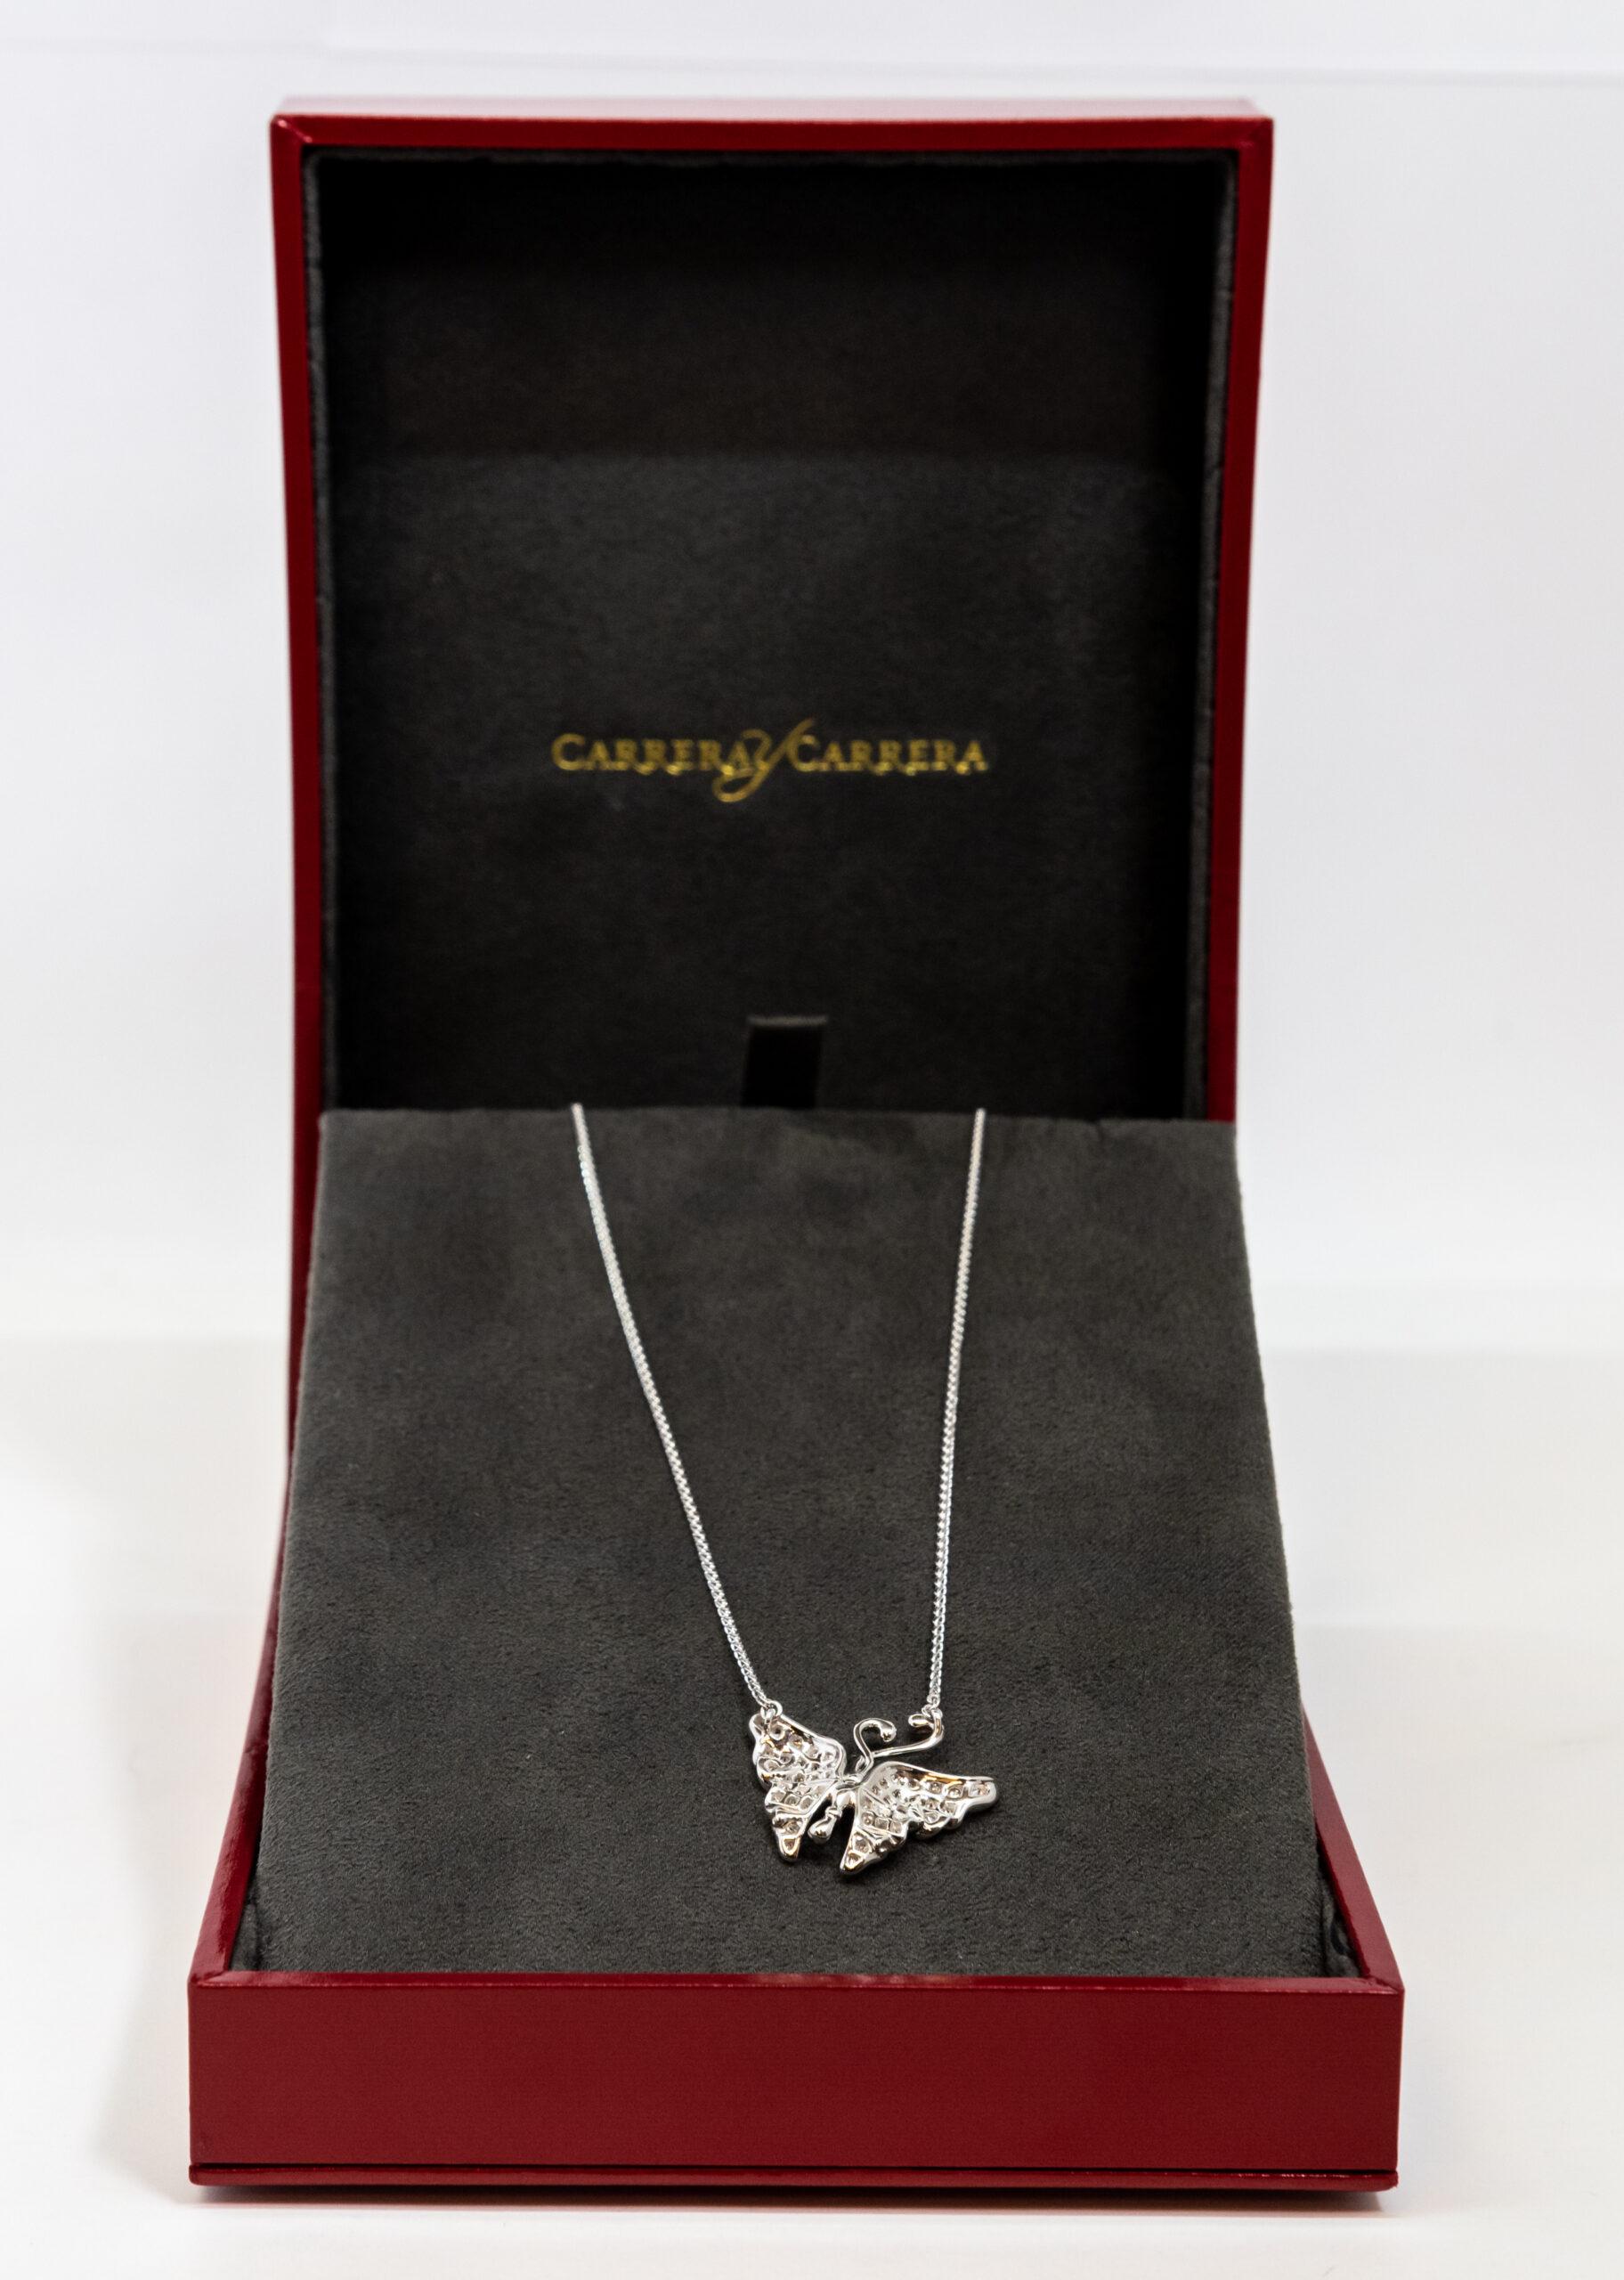 Carrera y Carrera Alegori 18K White Gold & Diamonds Pendant, 10068436 In New Condition For Sale In North Miami Beach, FL